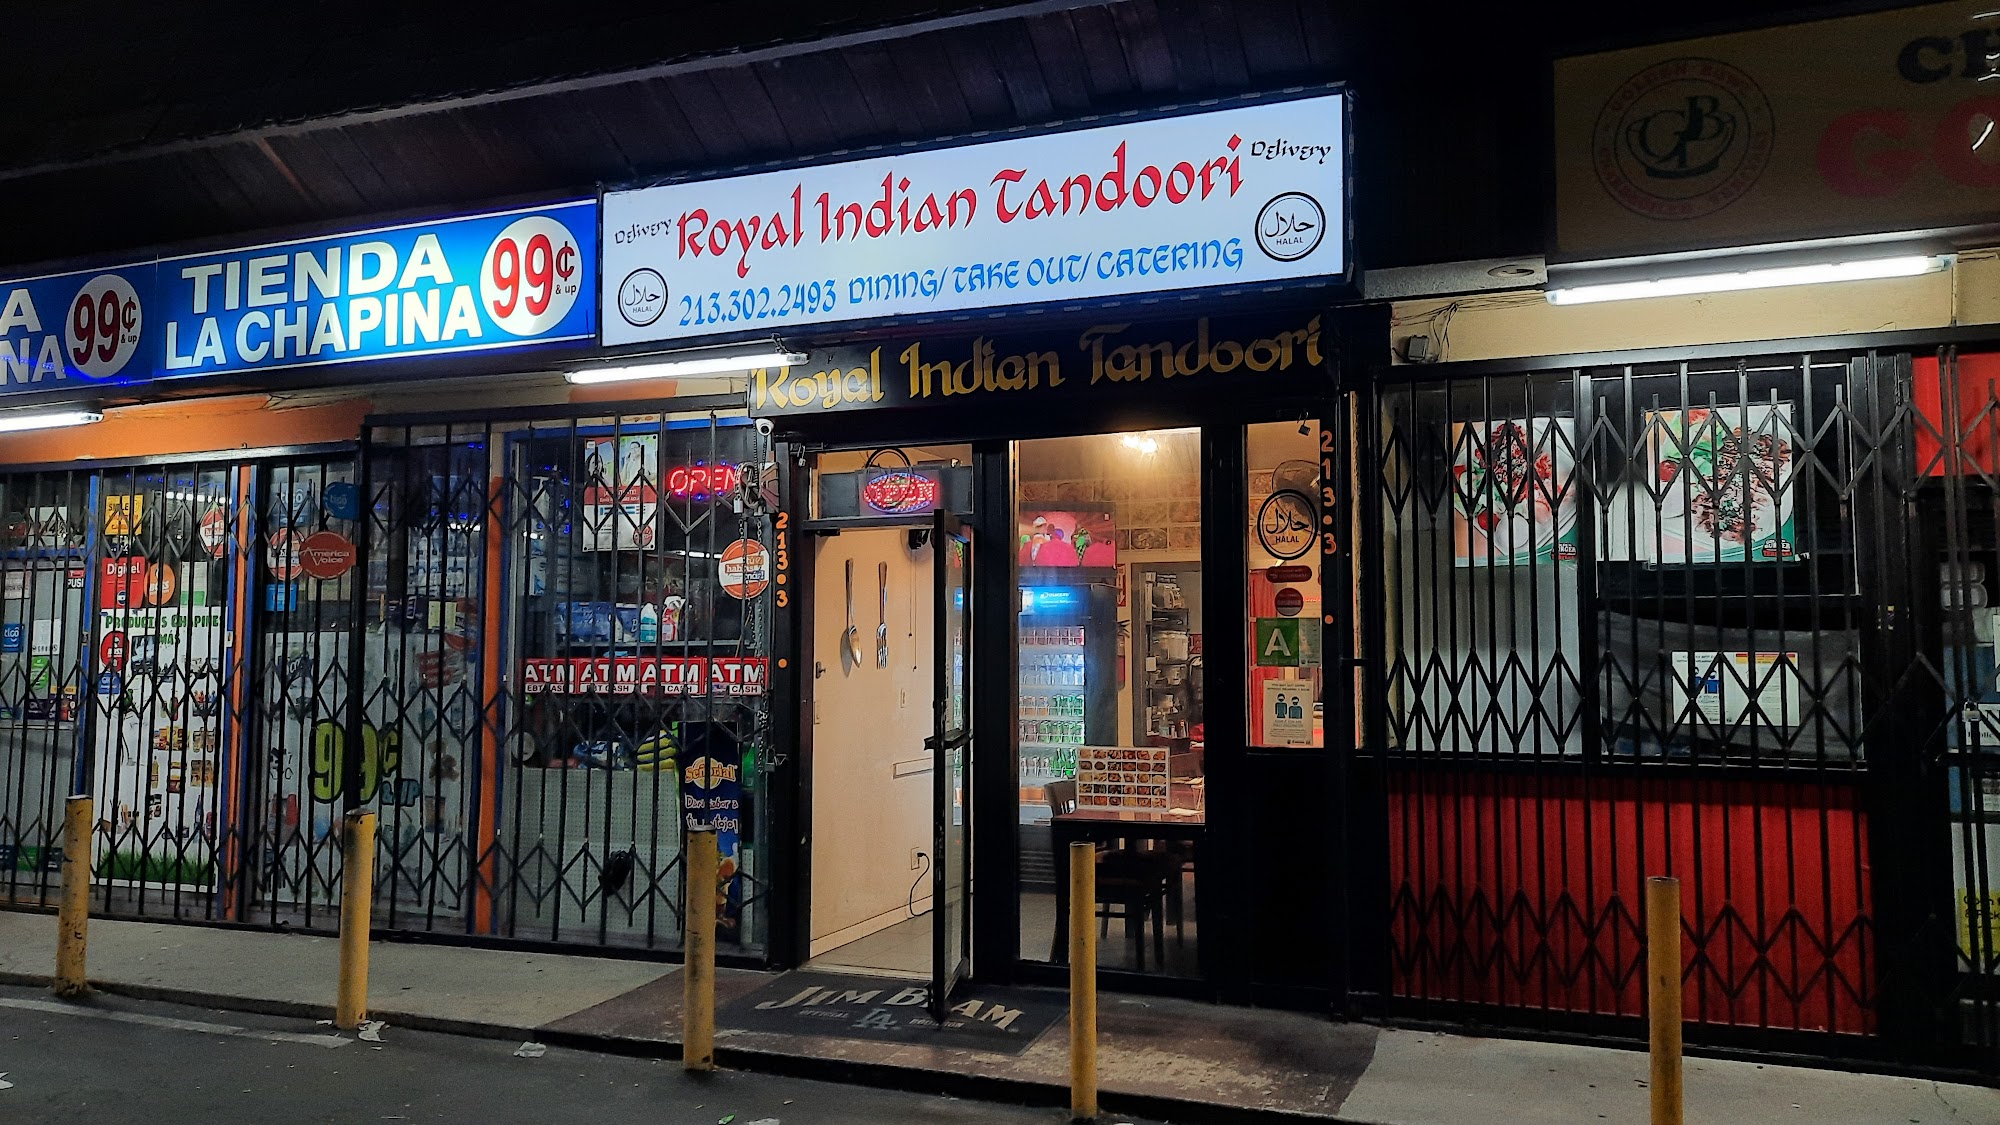 Royal Indian Tandoori